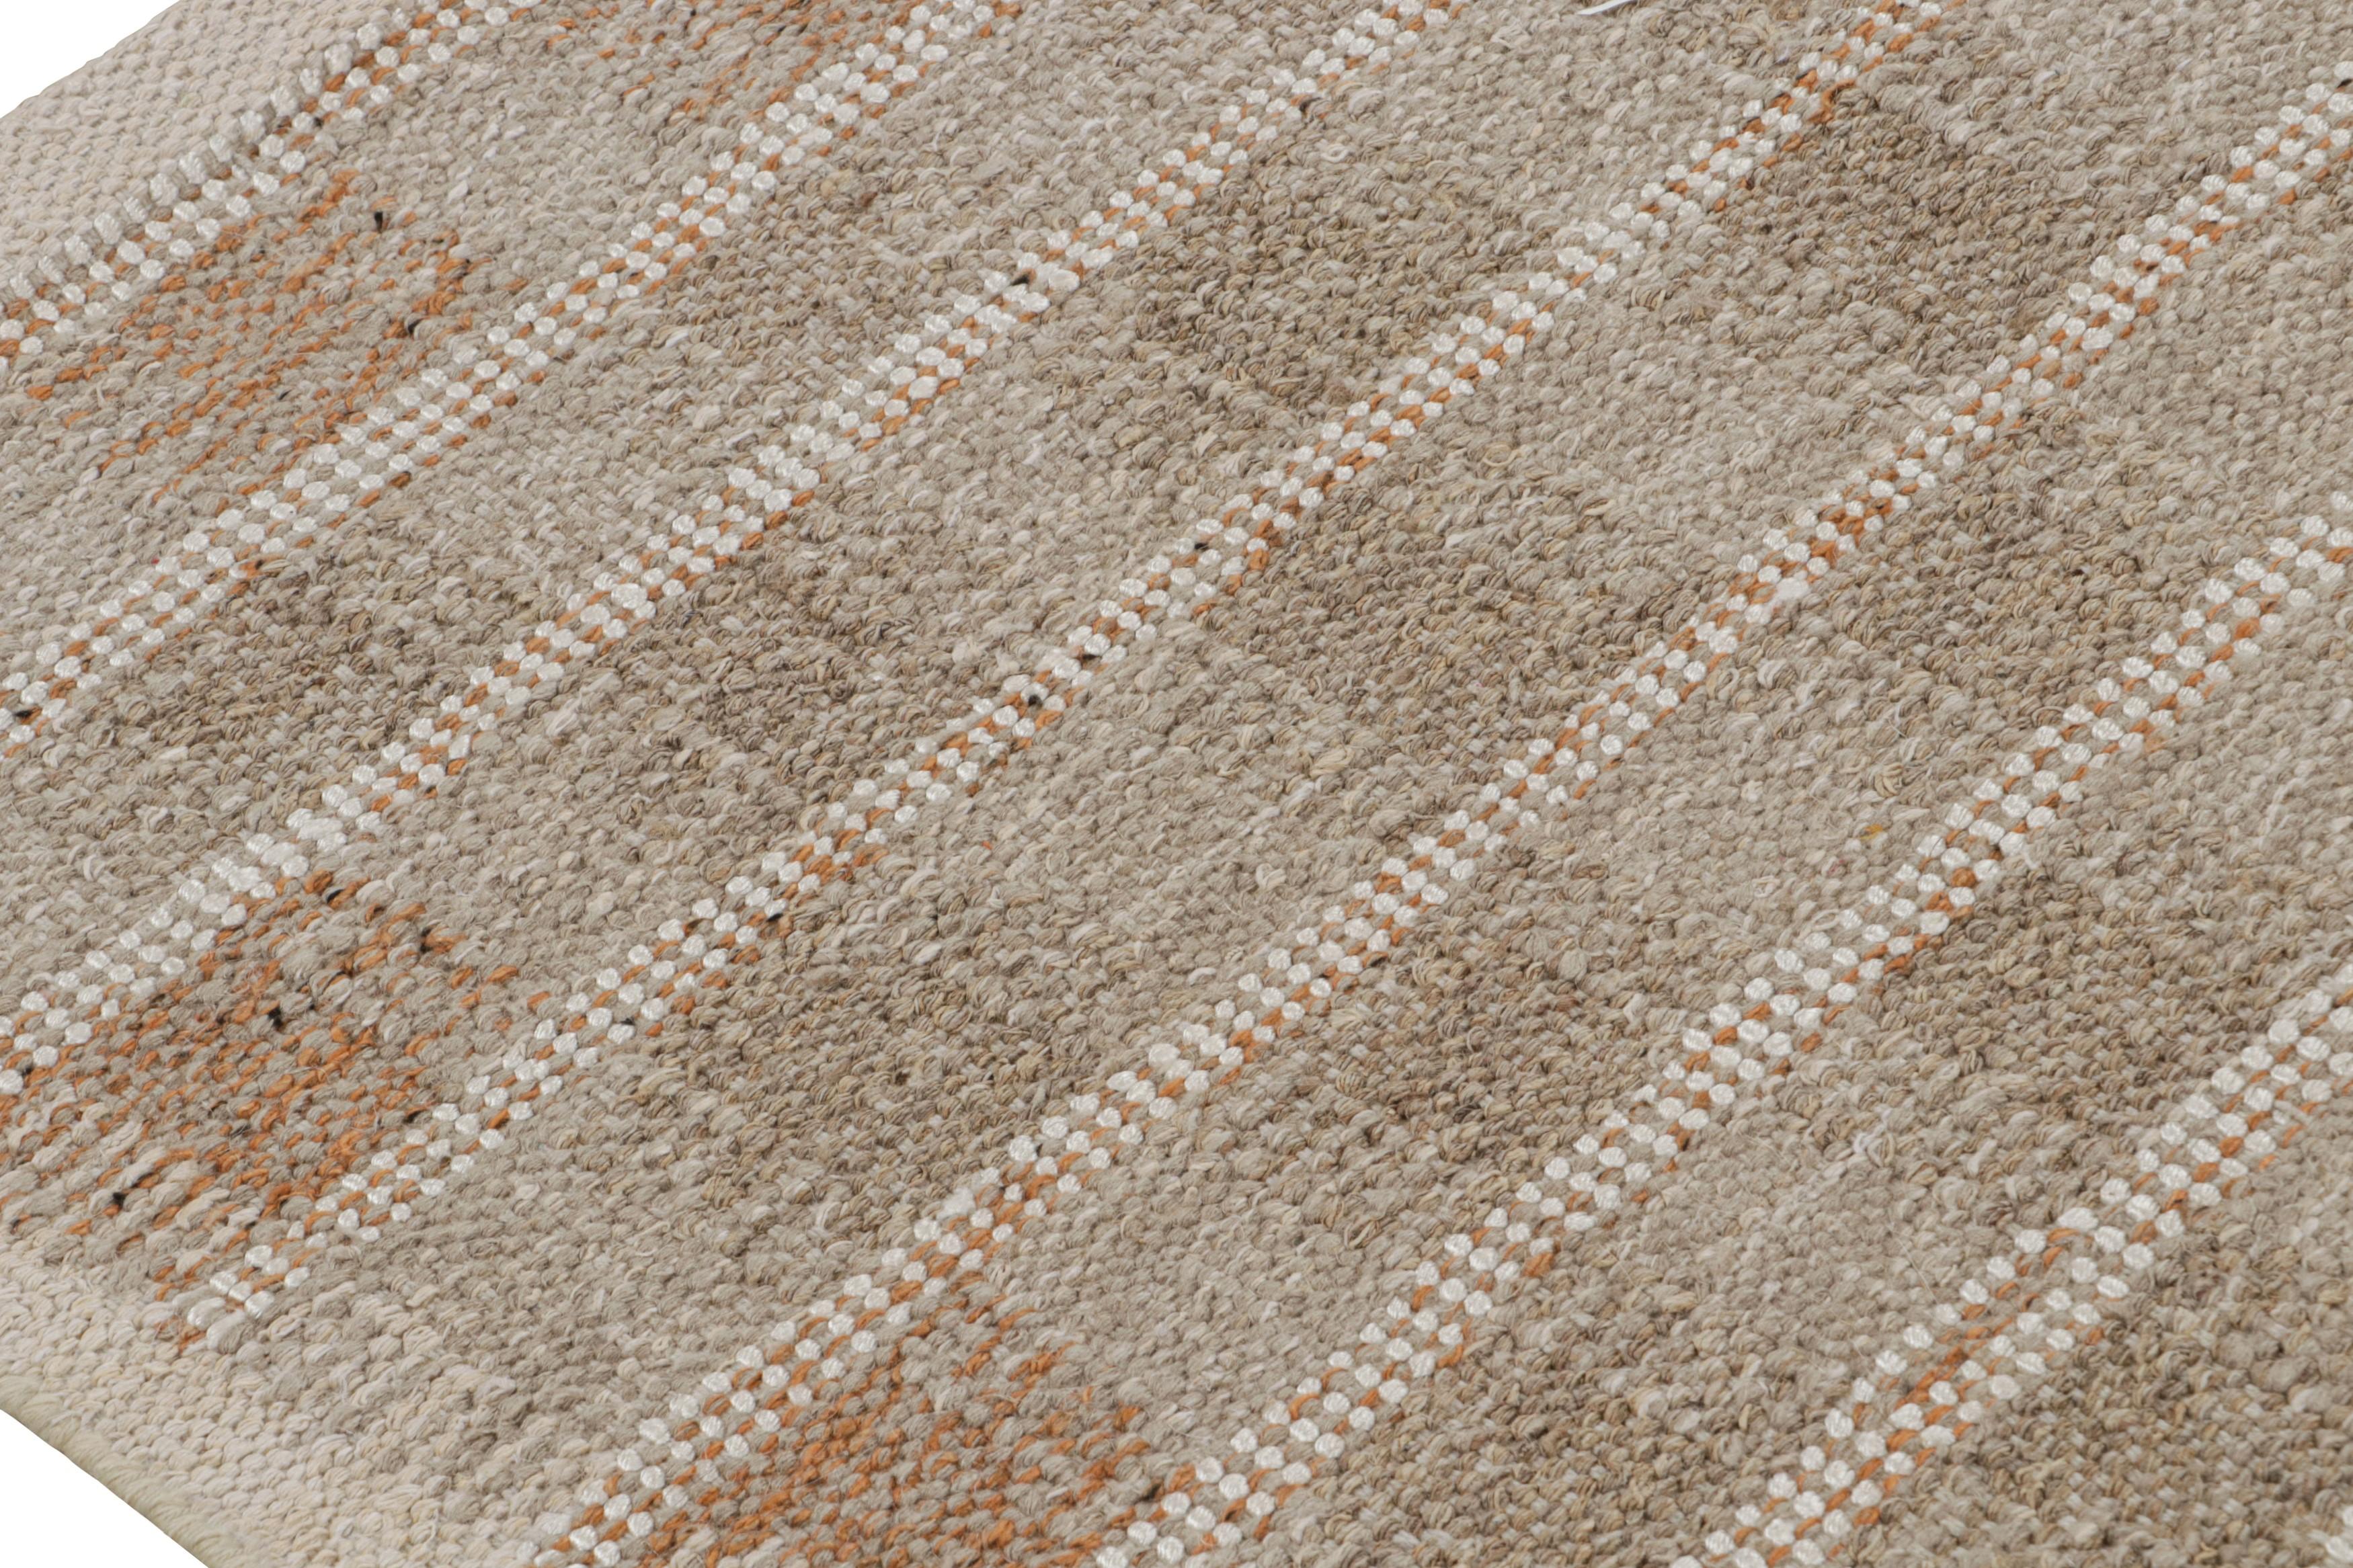 Indien Rug & Kilim's Scandinavian Style Square Rug in Beige-Brown Geometric Patterns (tapis carré de style scandinave à motifs géométriques beige et marron) en vente